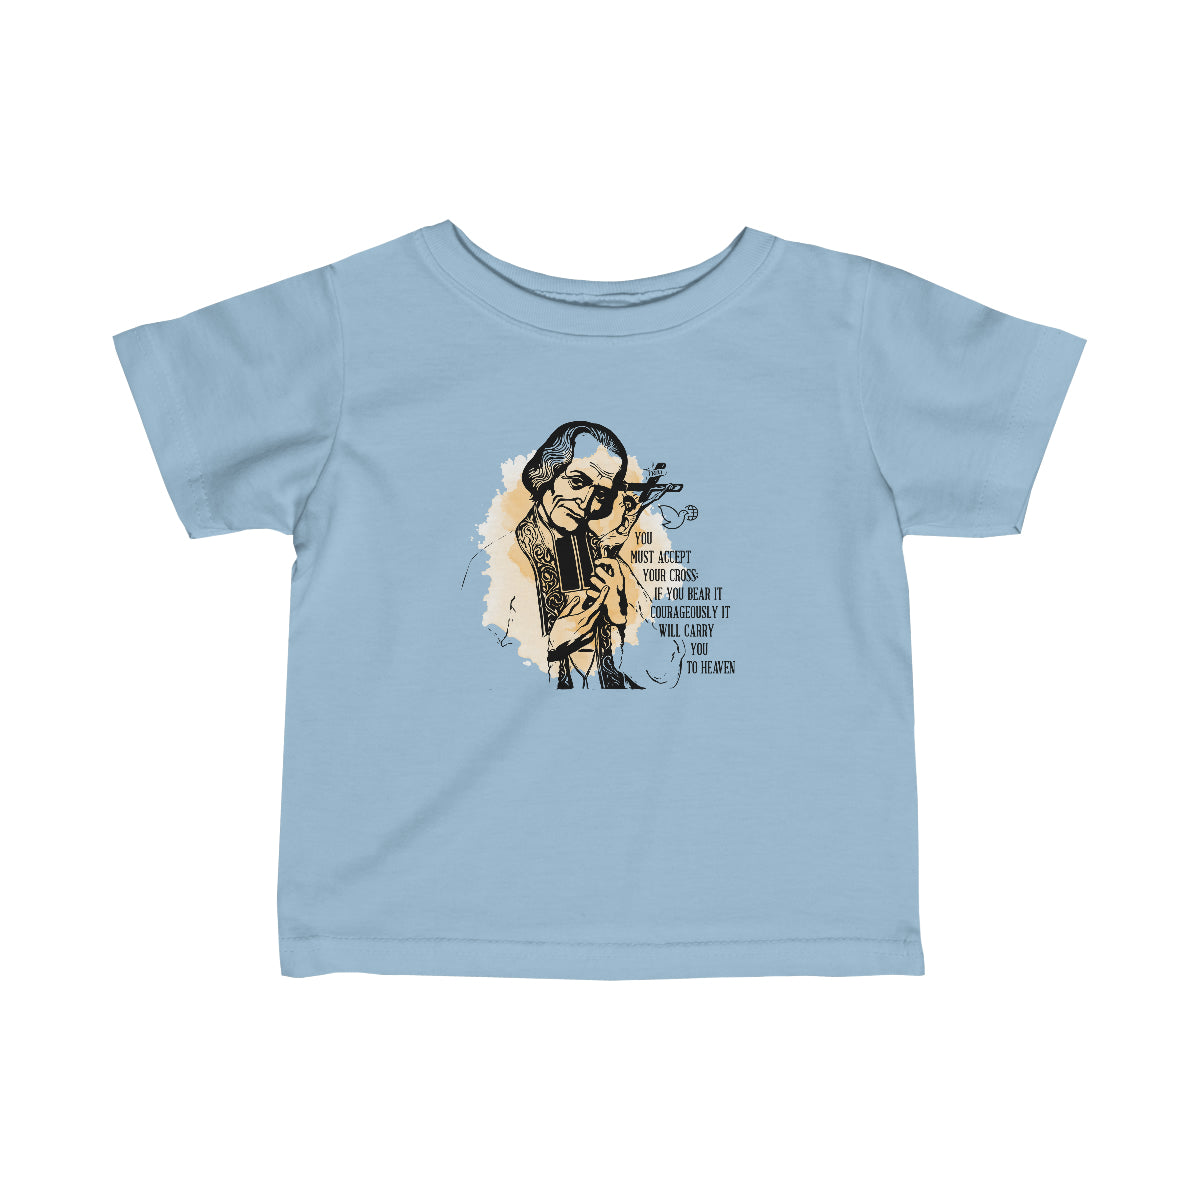 St. John Vianney Toddler Shirt